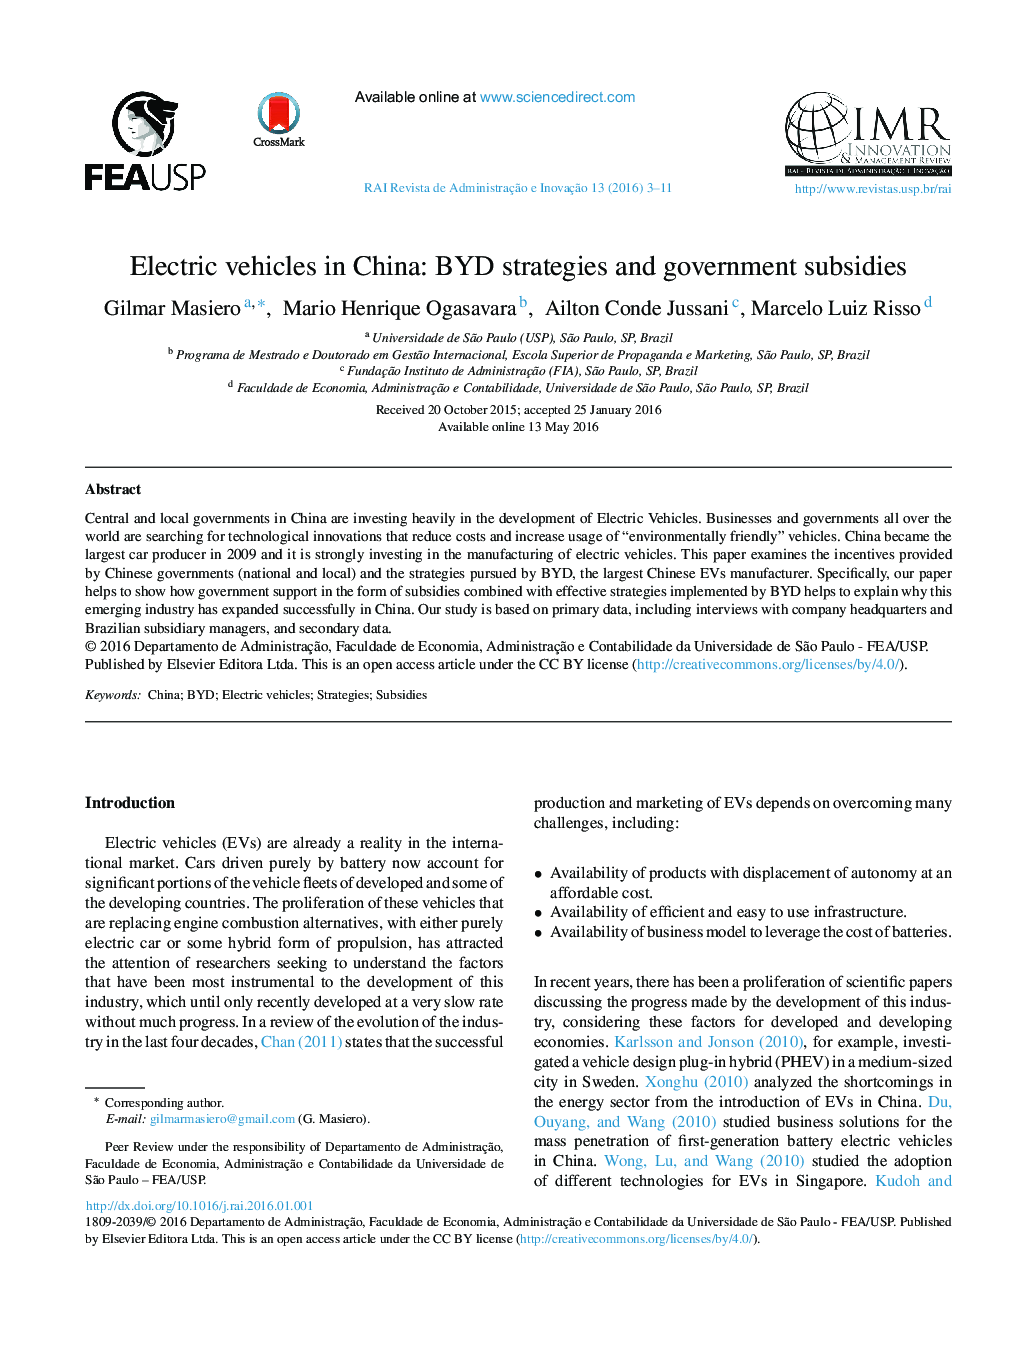 خودروهای برقی در چین: استراتژی های BYD و یارانه های دولتی